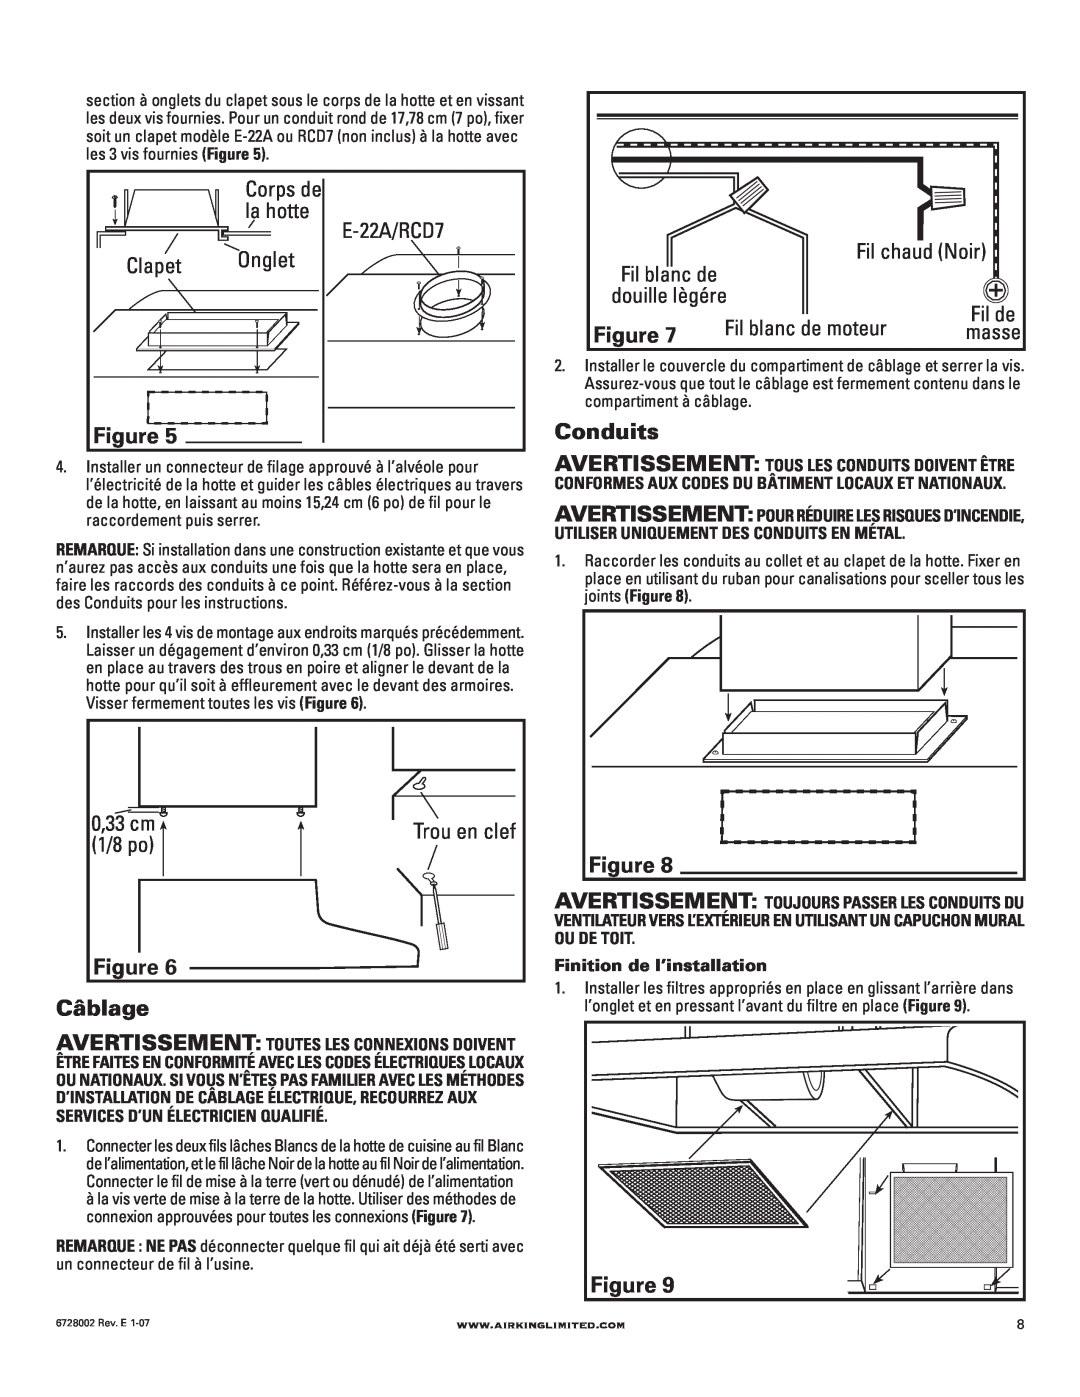 Air King Ventilation Hood manual Onglet, Câblage, Conduits, Corps de, la hotte, Clapet, 0,33 cm, 1/8 po, Fil chaud Noir 